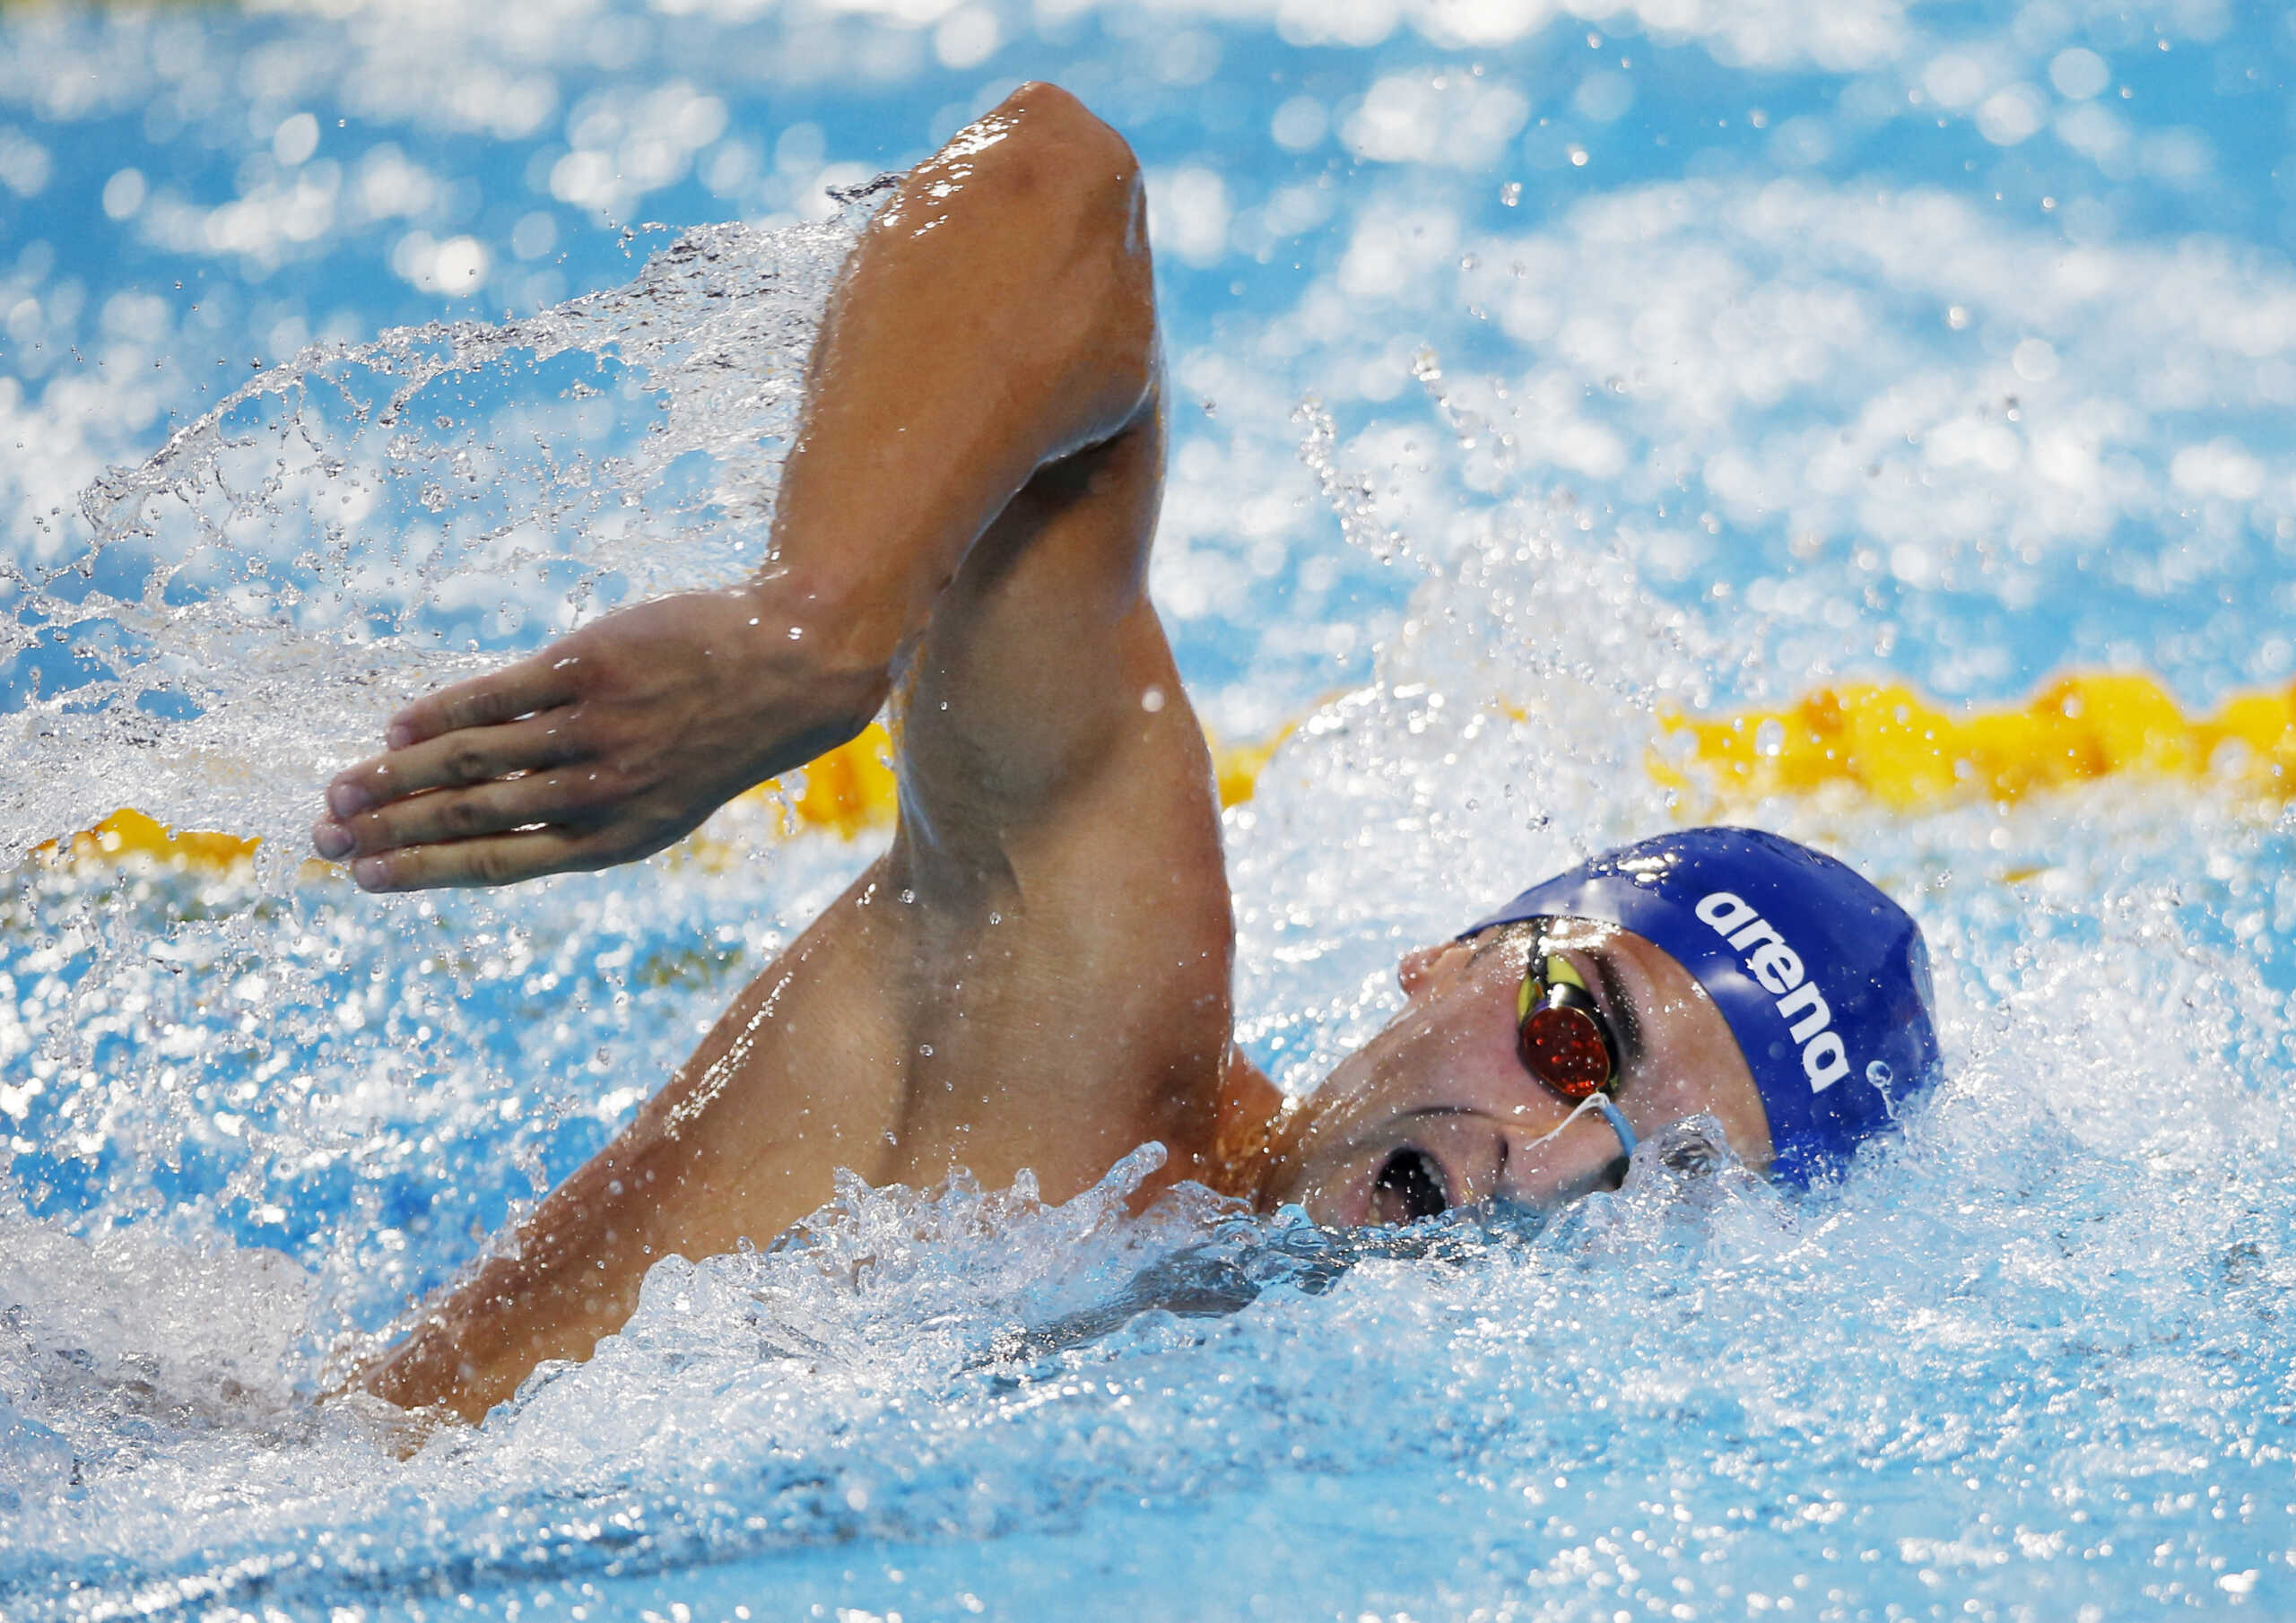 Ο Δημήτρης Μάρκος έκανε πανελλήνιο ρεκόρ και προκρίθηκε στον τελικό των 200 μέτρων ελεύθερο στο ευρωπαϊκό πρωτάθλημα κολύμβησης